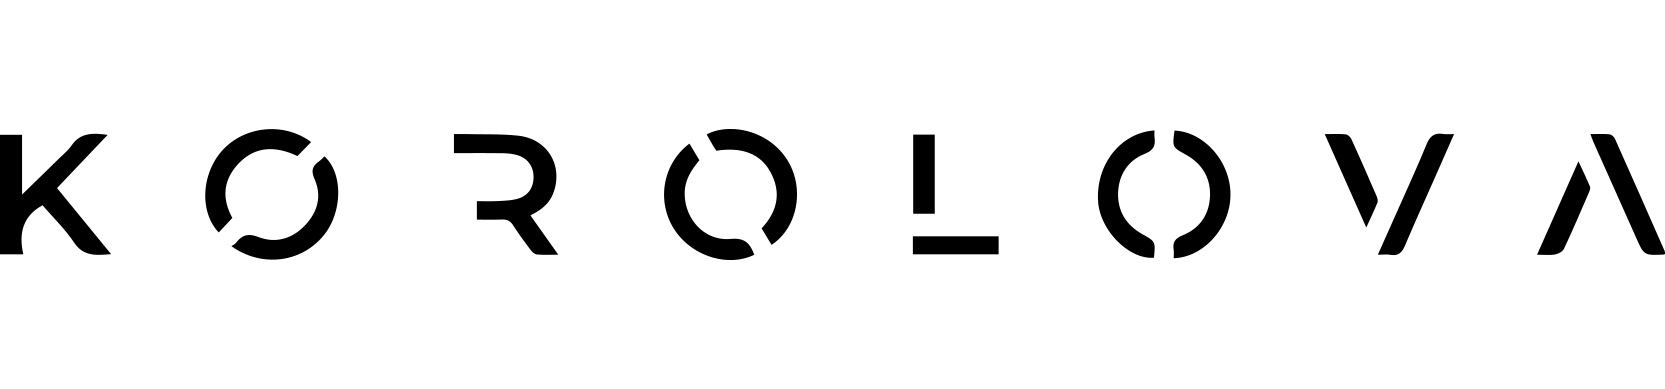 Korolova logo horizontal